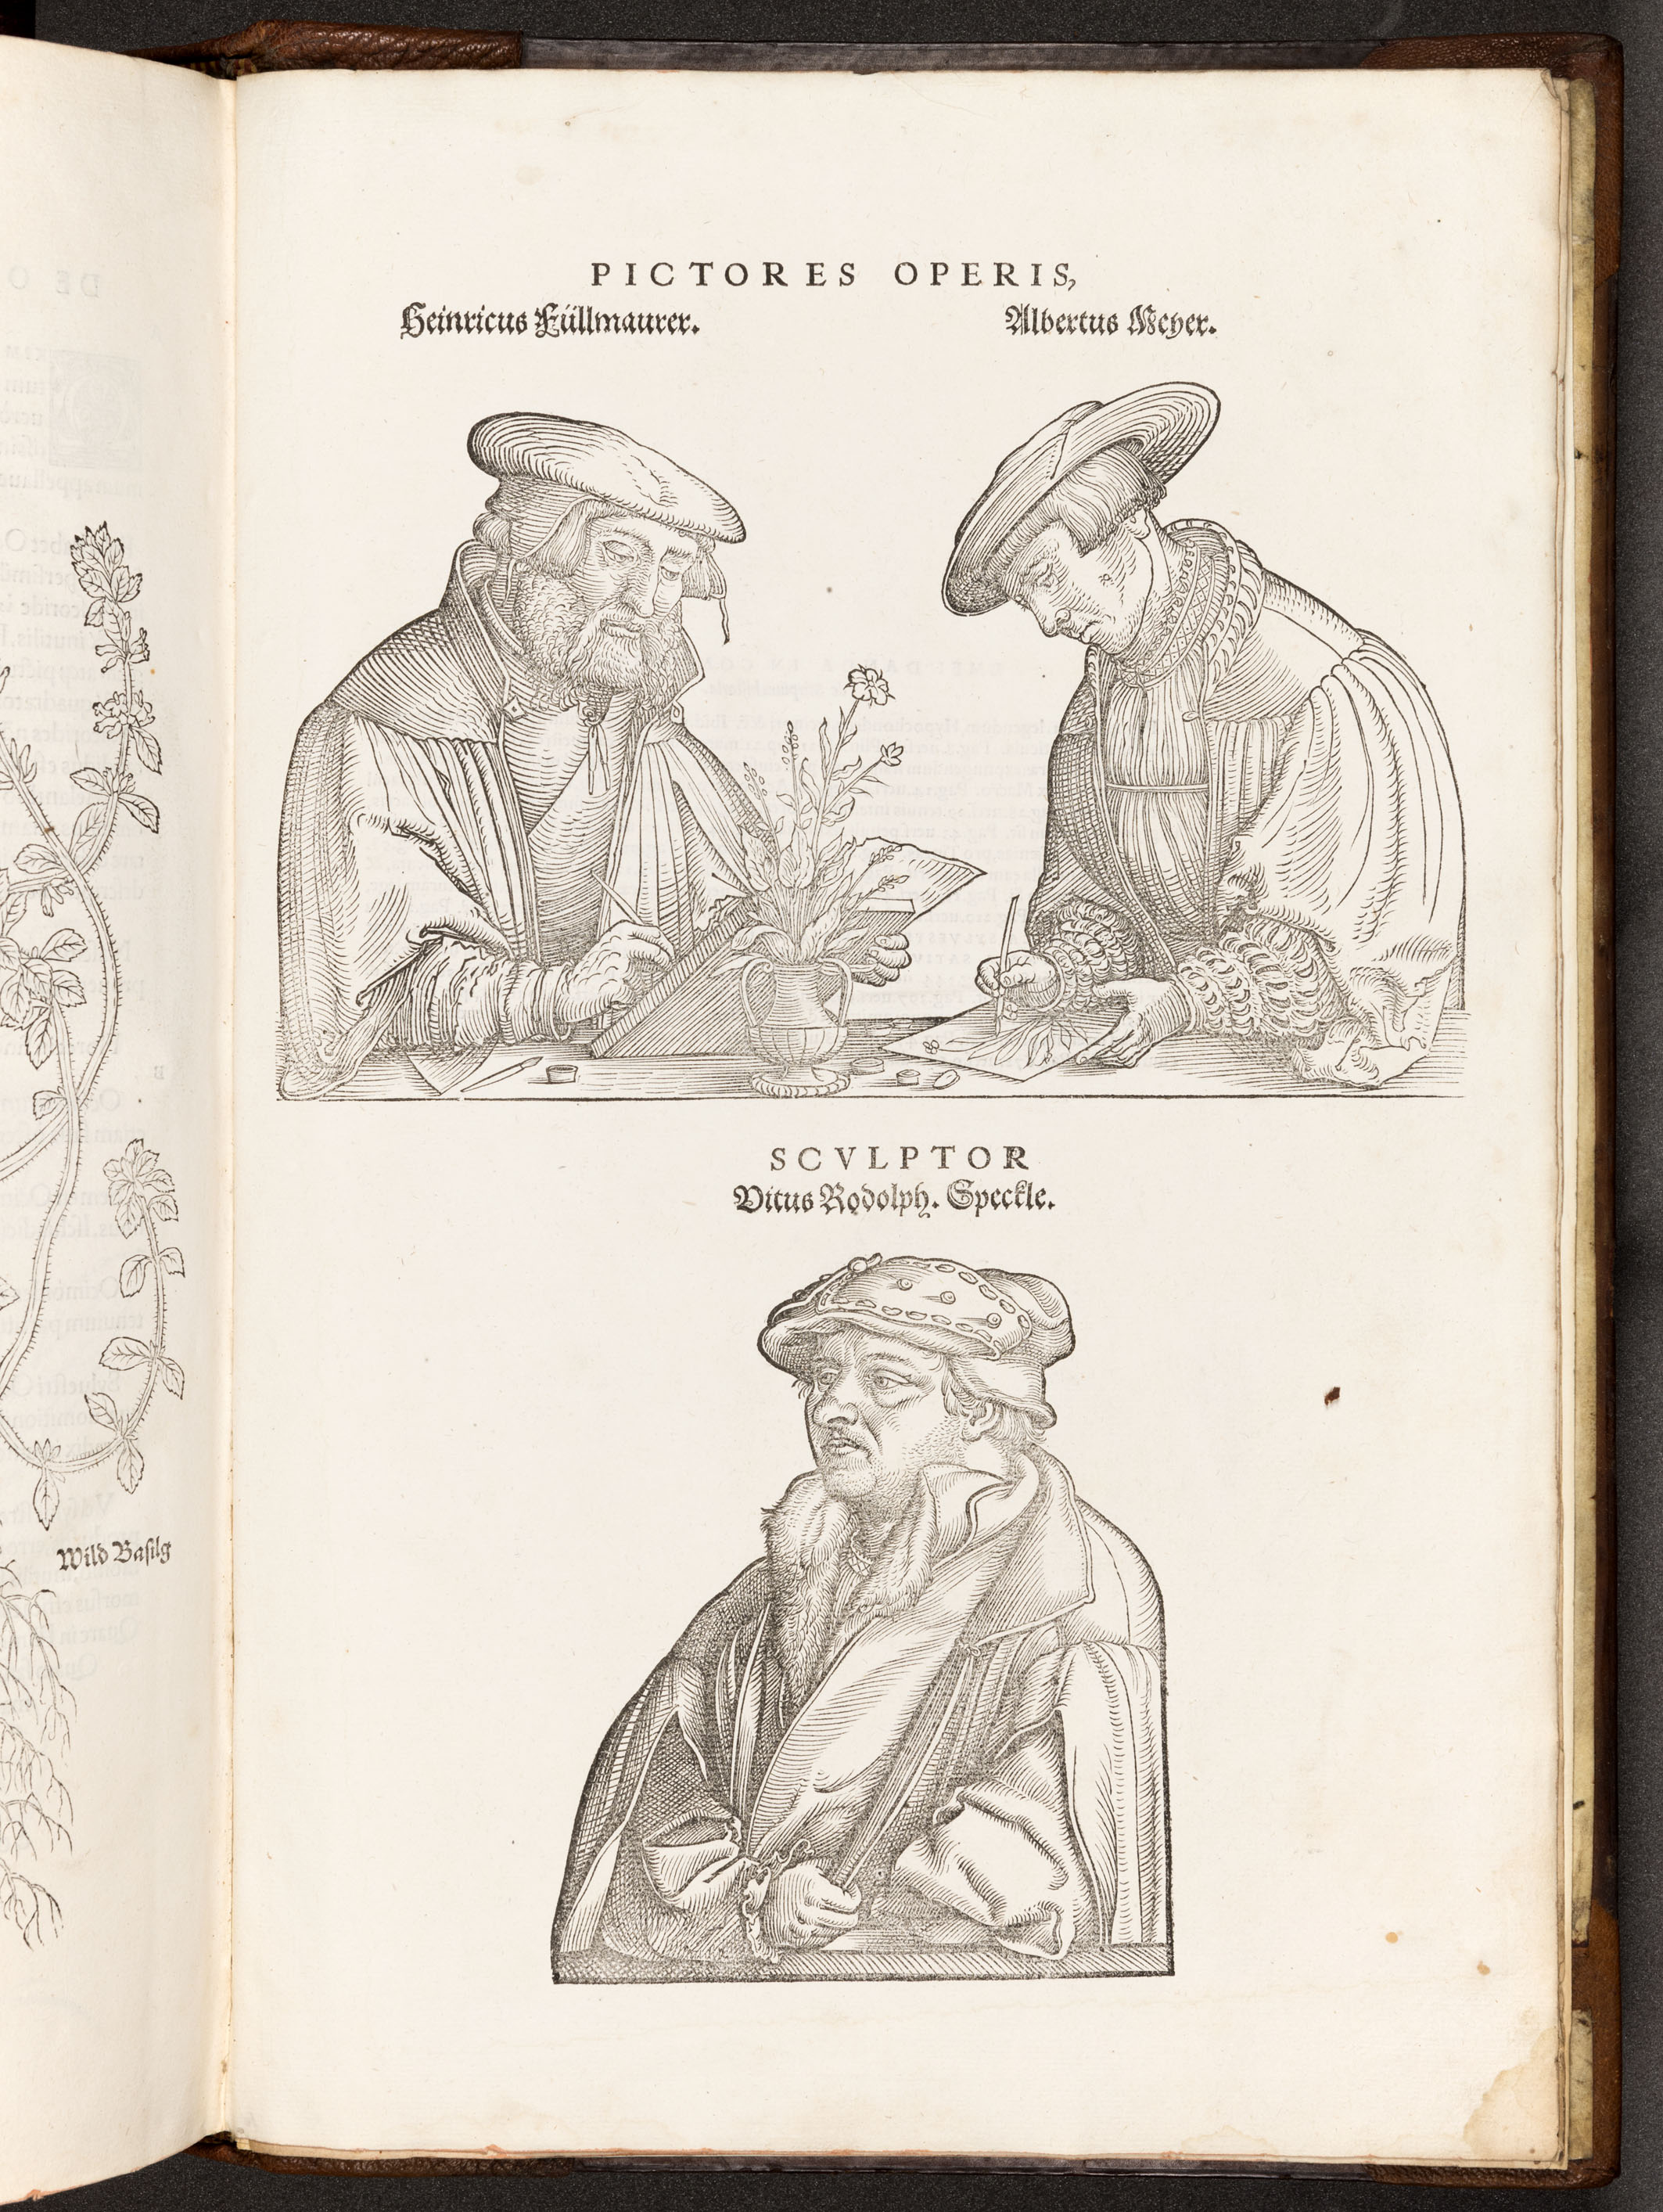 BT3.267.5, Leonhart Fuchs’s De historia stirpium commentarii insignes (1542), illustration of artists and the engraver, opp. p. 896